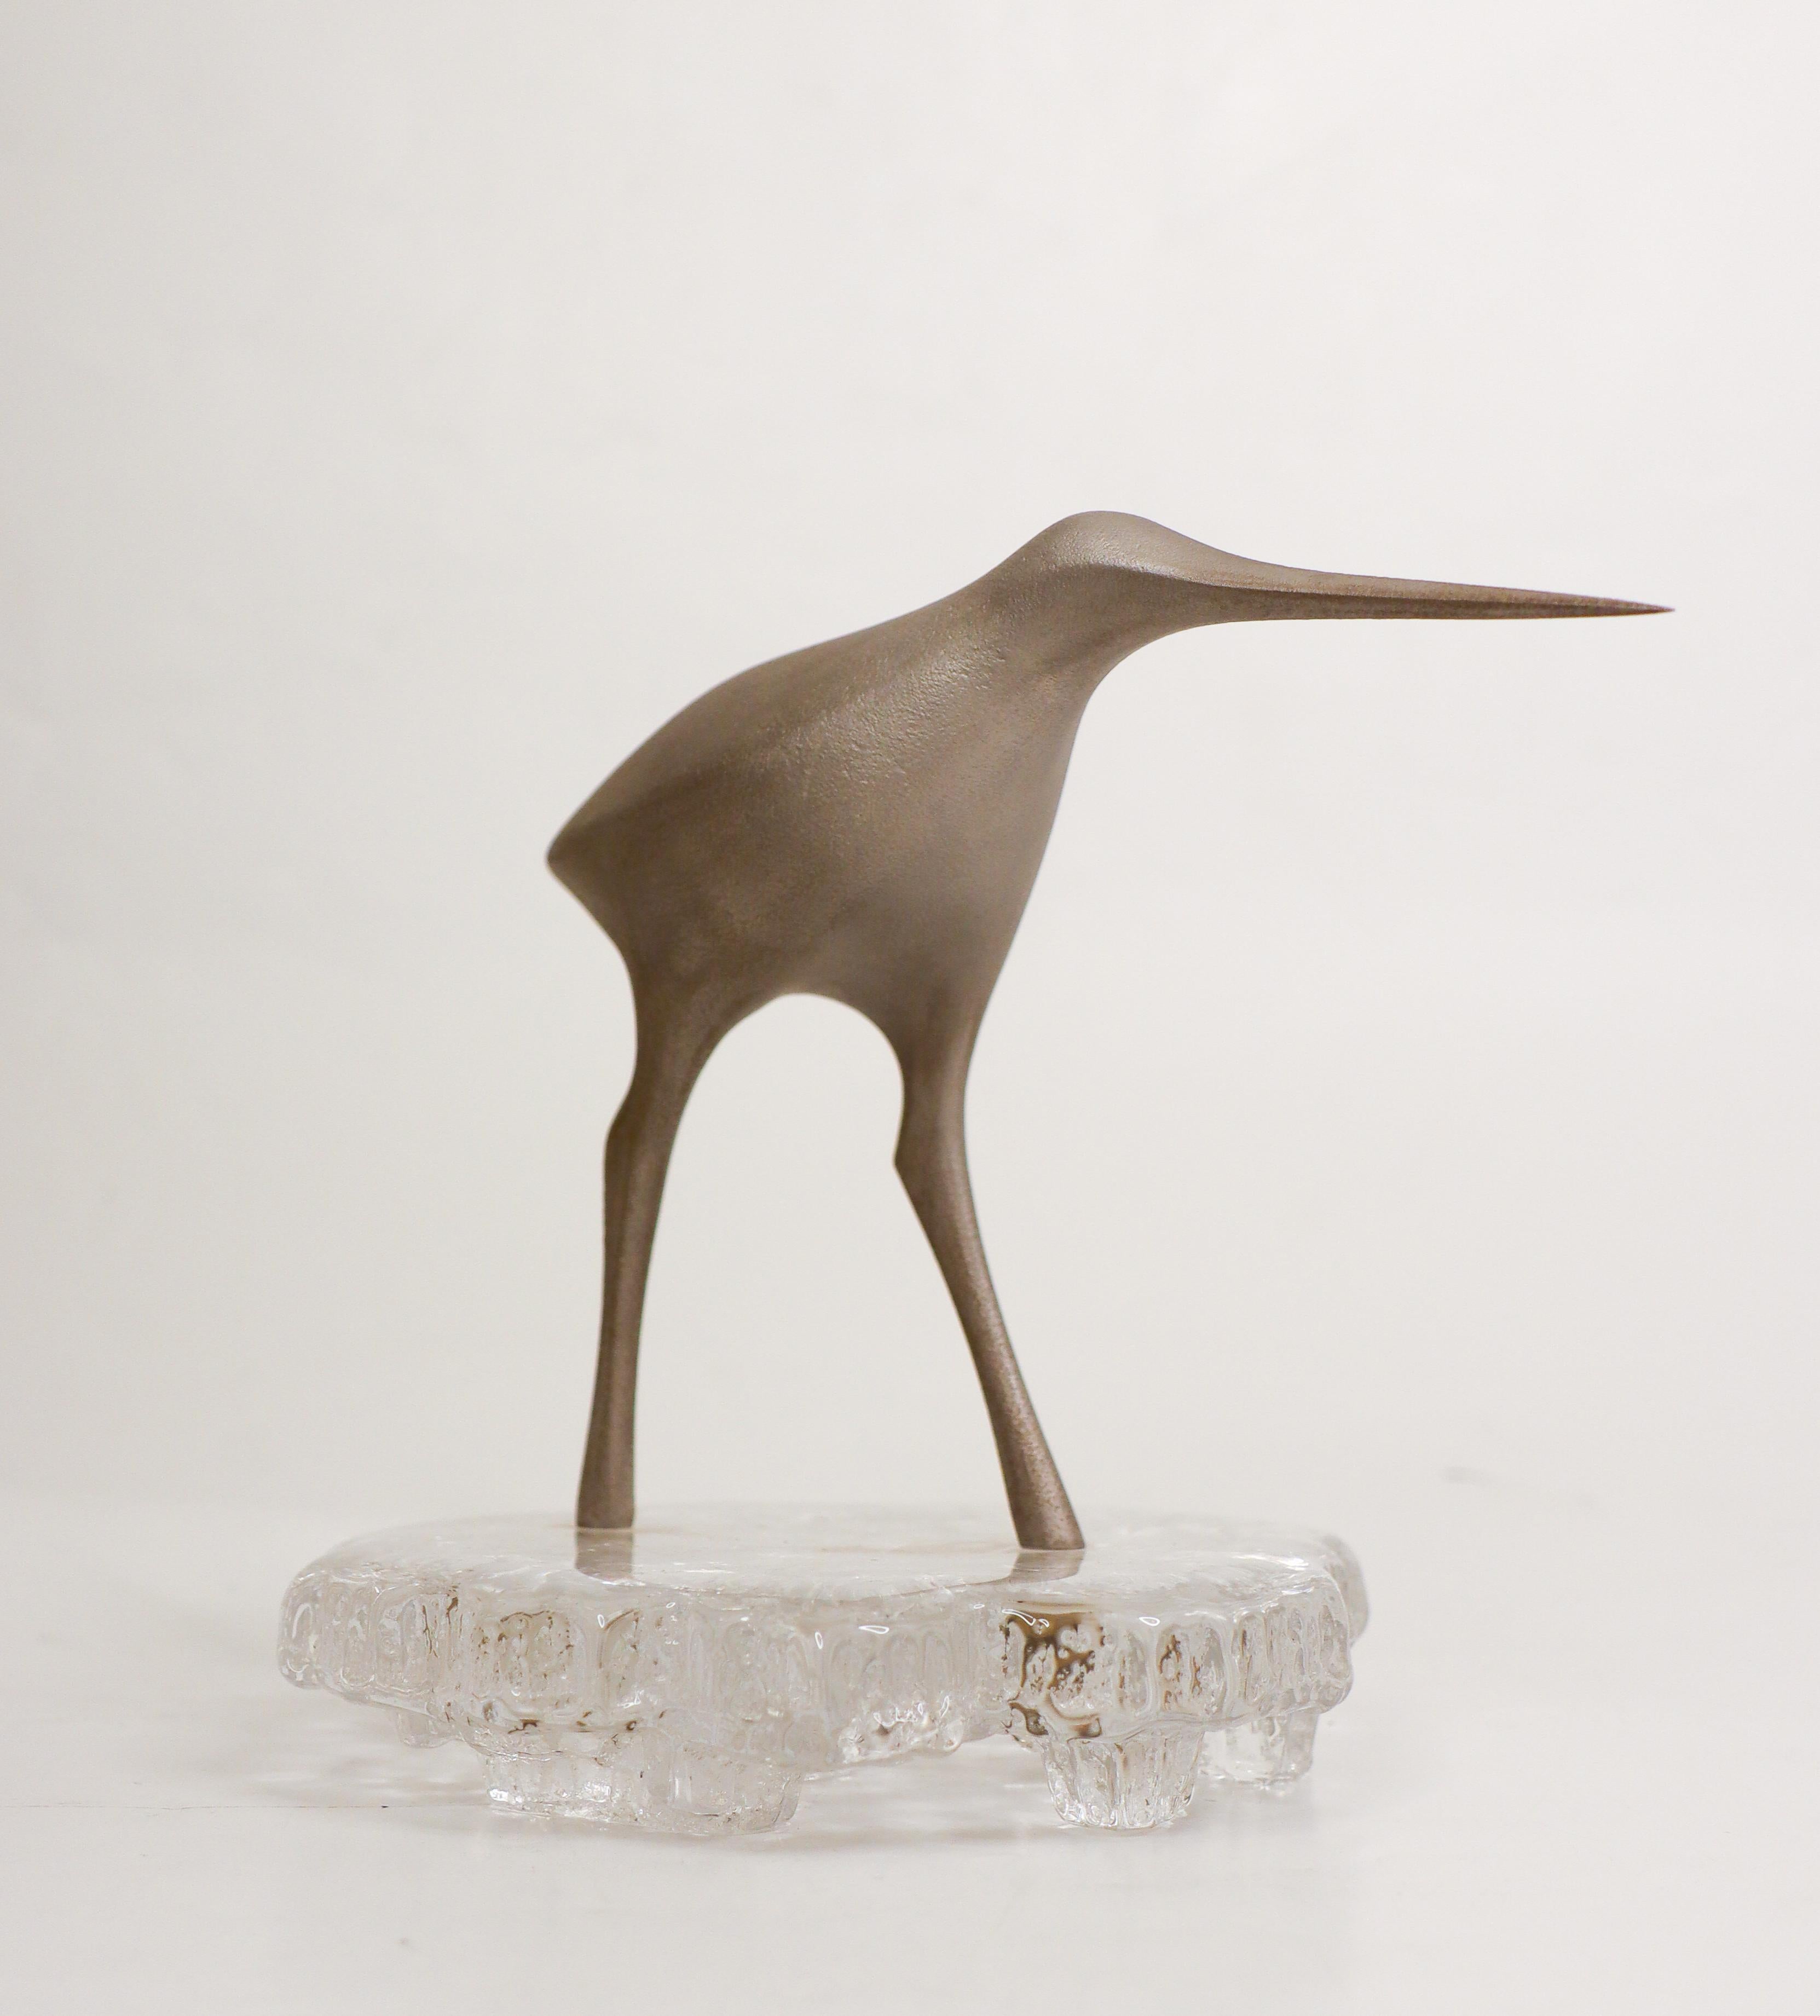 Eine schöne Vogelskulptur von Tapio Wirkkala. Sie besteht aus Metall mit einem Sockel aus Glas, ist 15,5 cm hoch und hat einen Durchmesser von etwa 13,5 cm an der Basis. Der Metallteil ist gestempelt, und der Glassockel ist unten signiert. Der